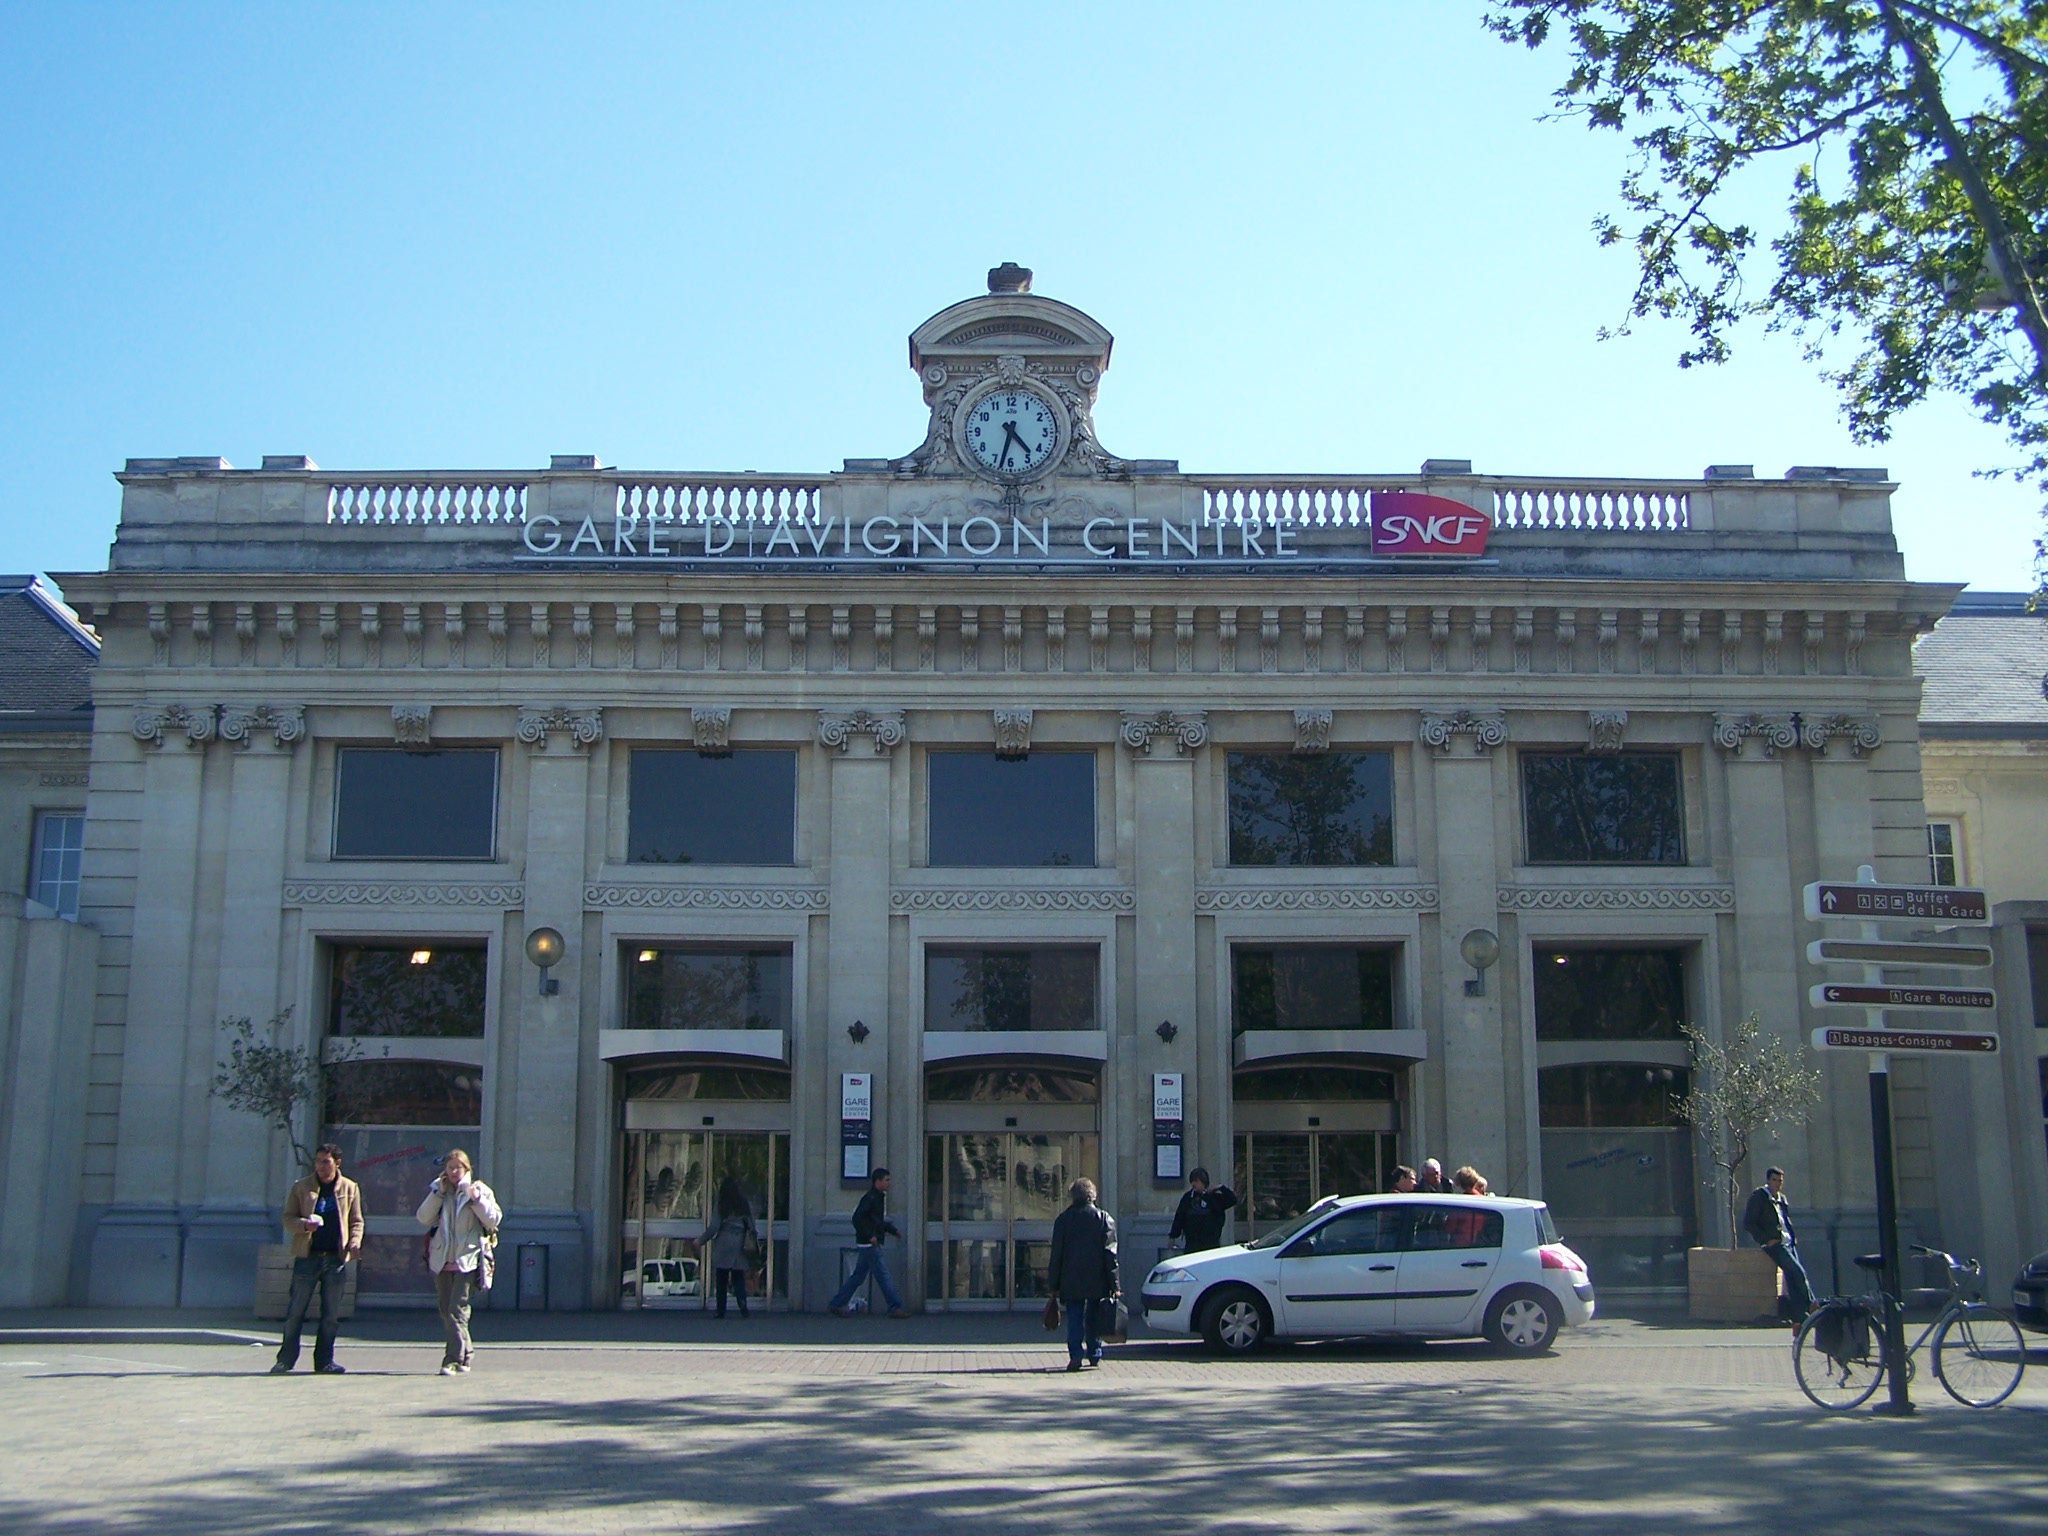 La gare d'Avignon totalement fermée samedi 30 mars